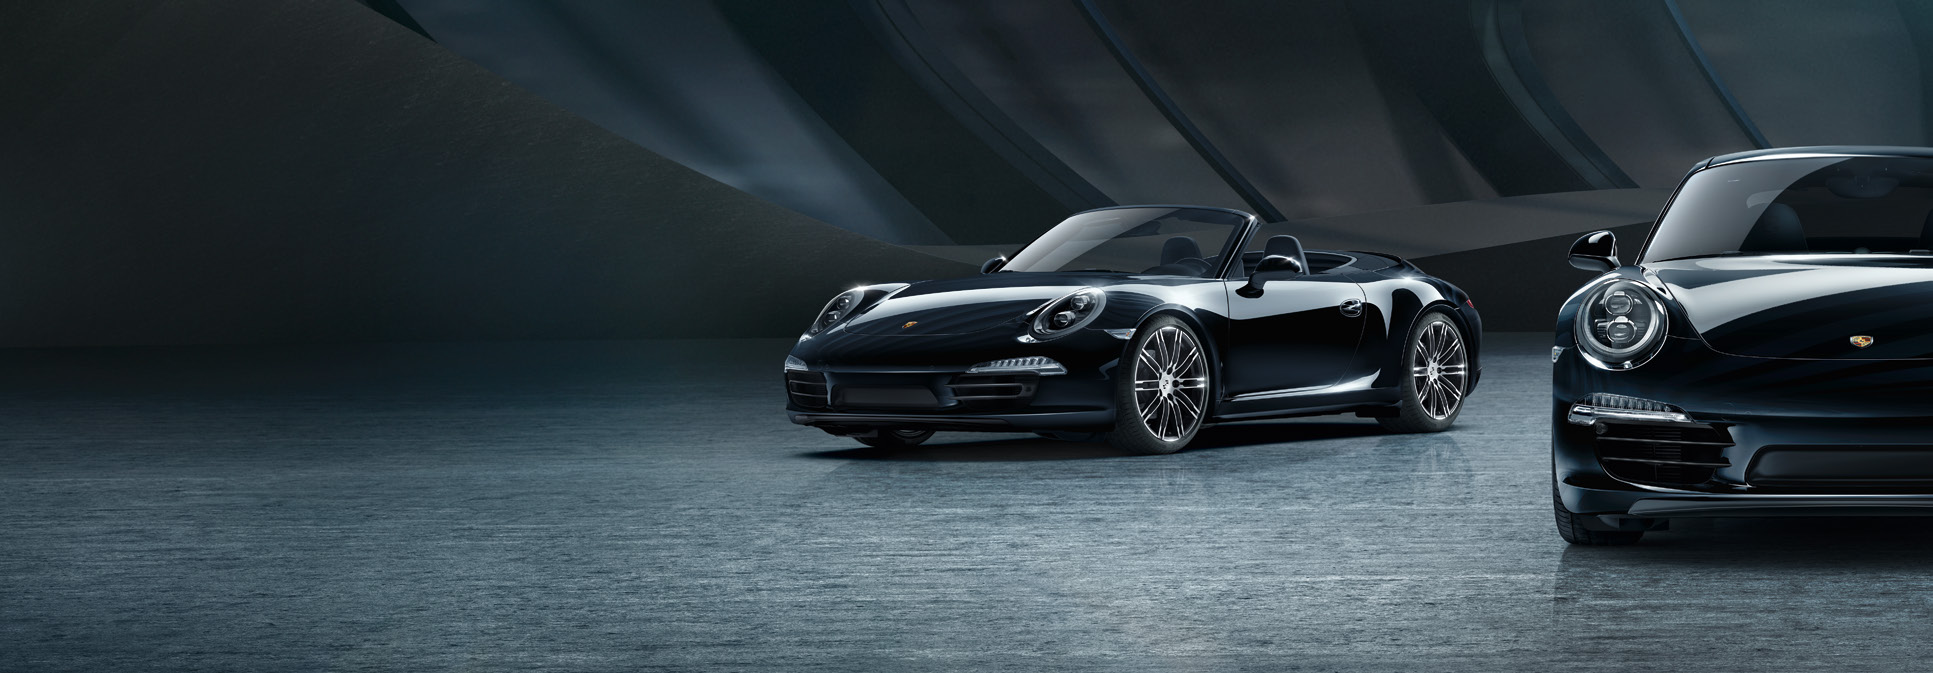 Was herauskommt, wenn man den Traum vom 911 noch einmal steigert: 911 Carrera Black Edition Modelle. Der 911. Eine Legende seit 1963. Was man dem noch hinzufügen kann?